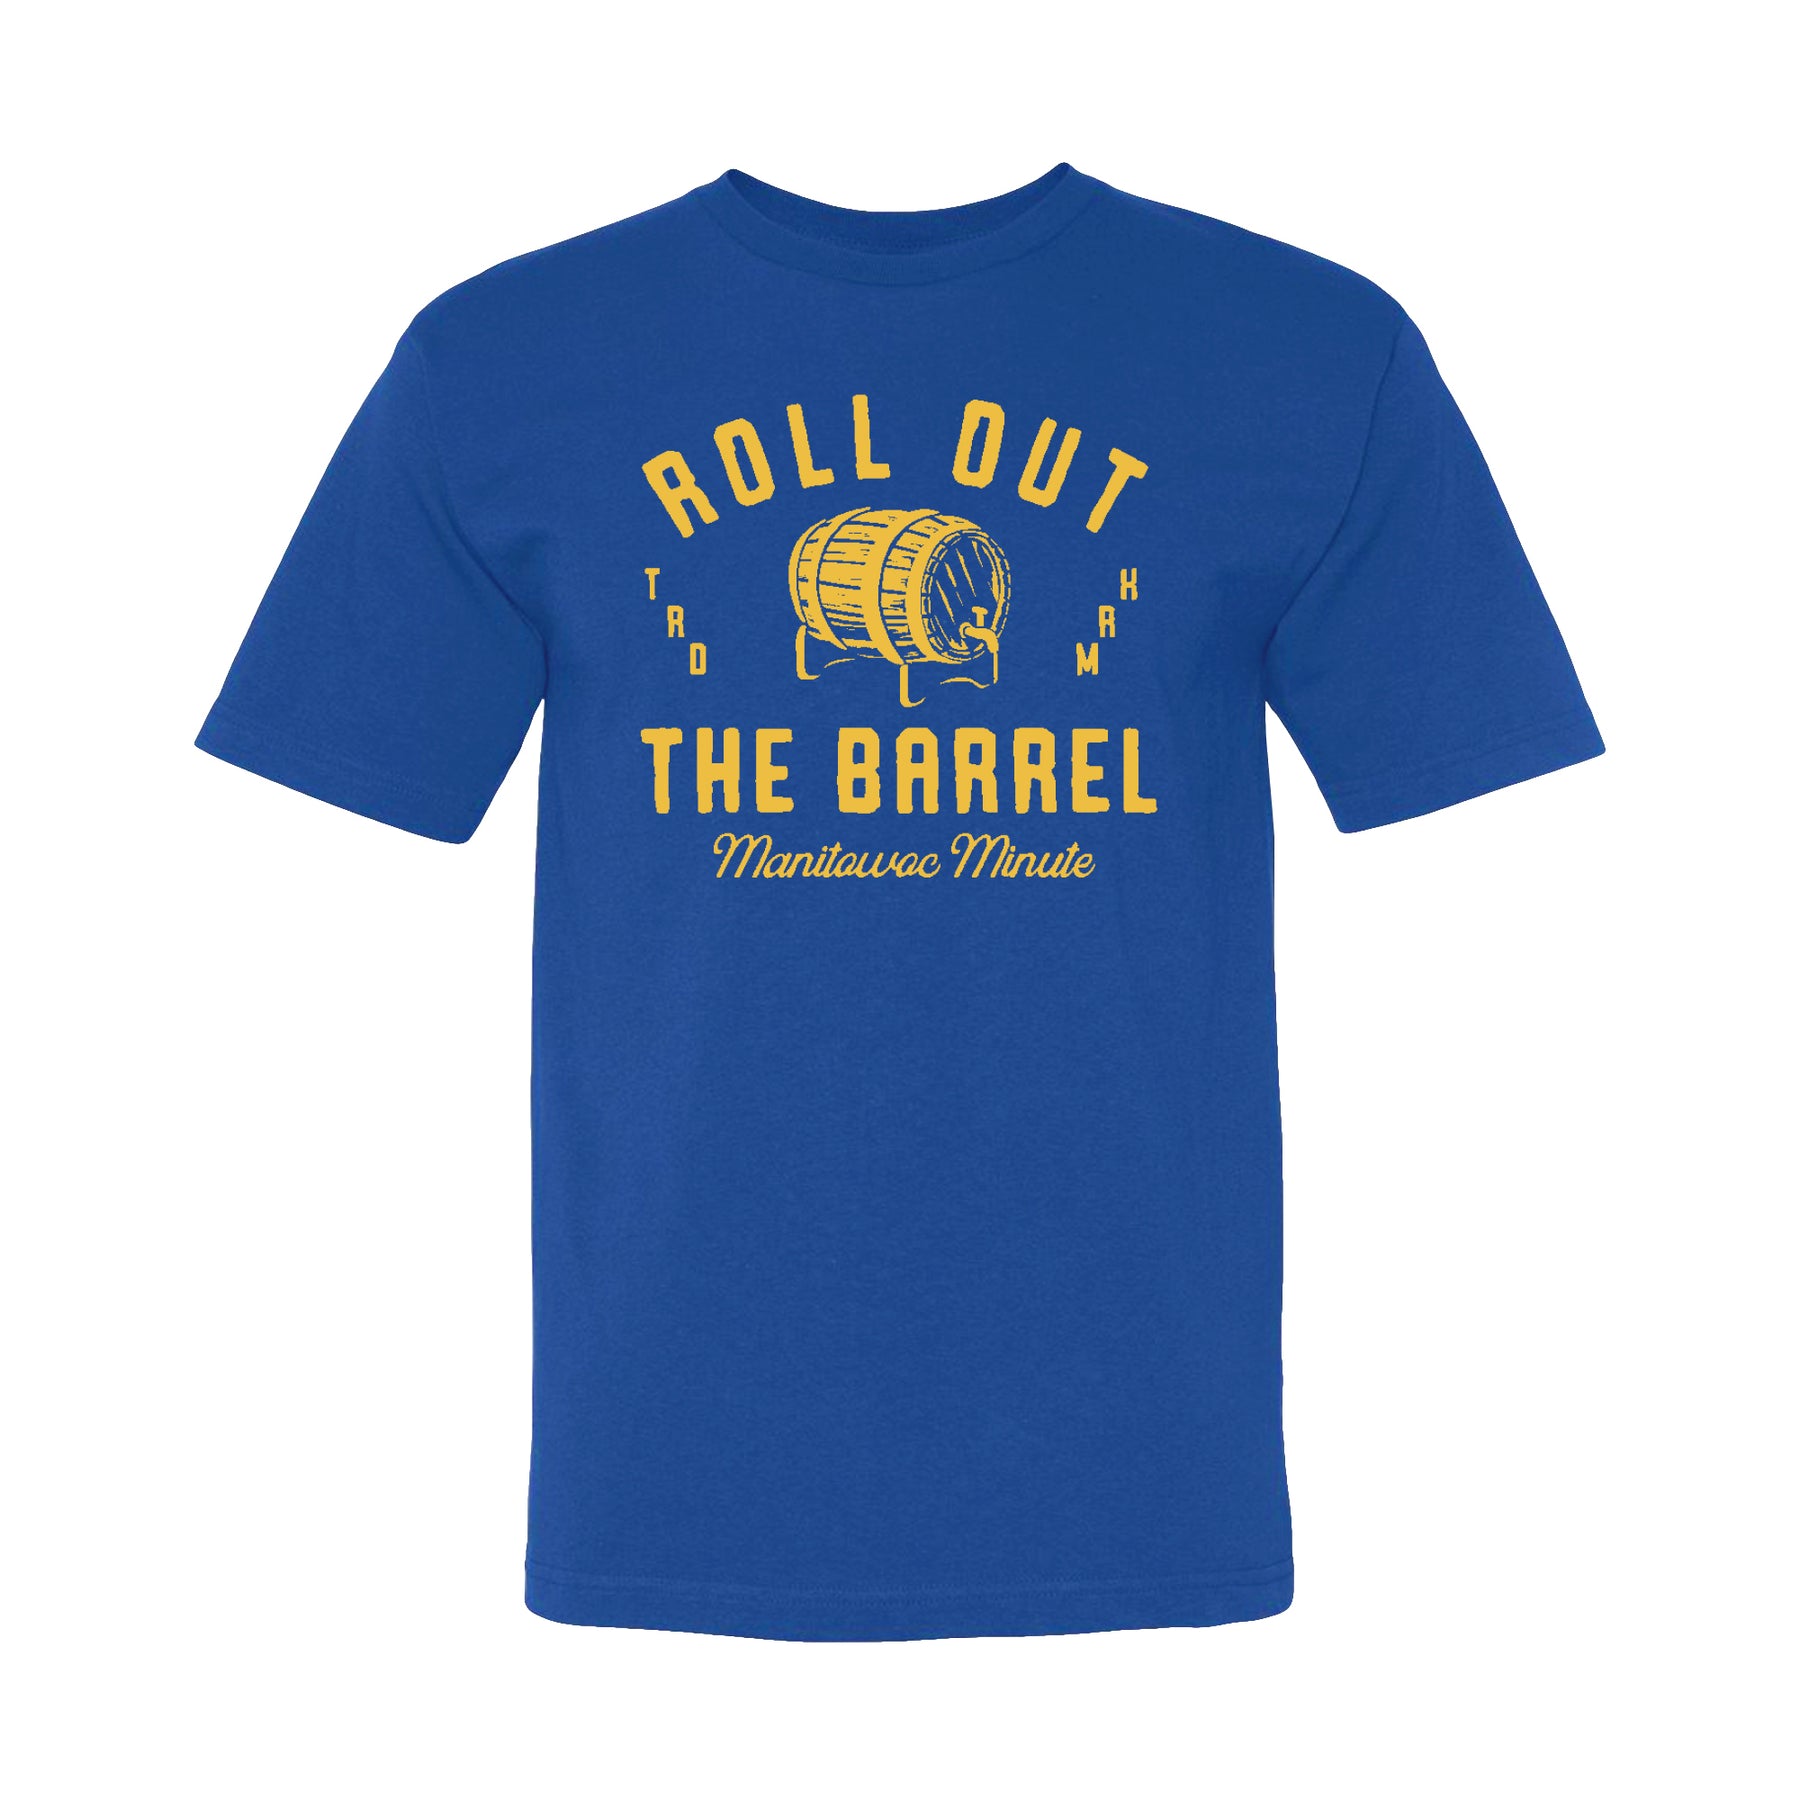 Do A Barrel Roll Infant Premium T-Shirt – Pop Up Tee